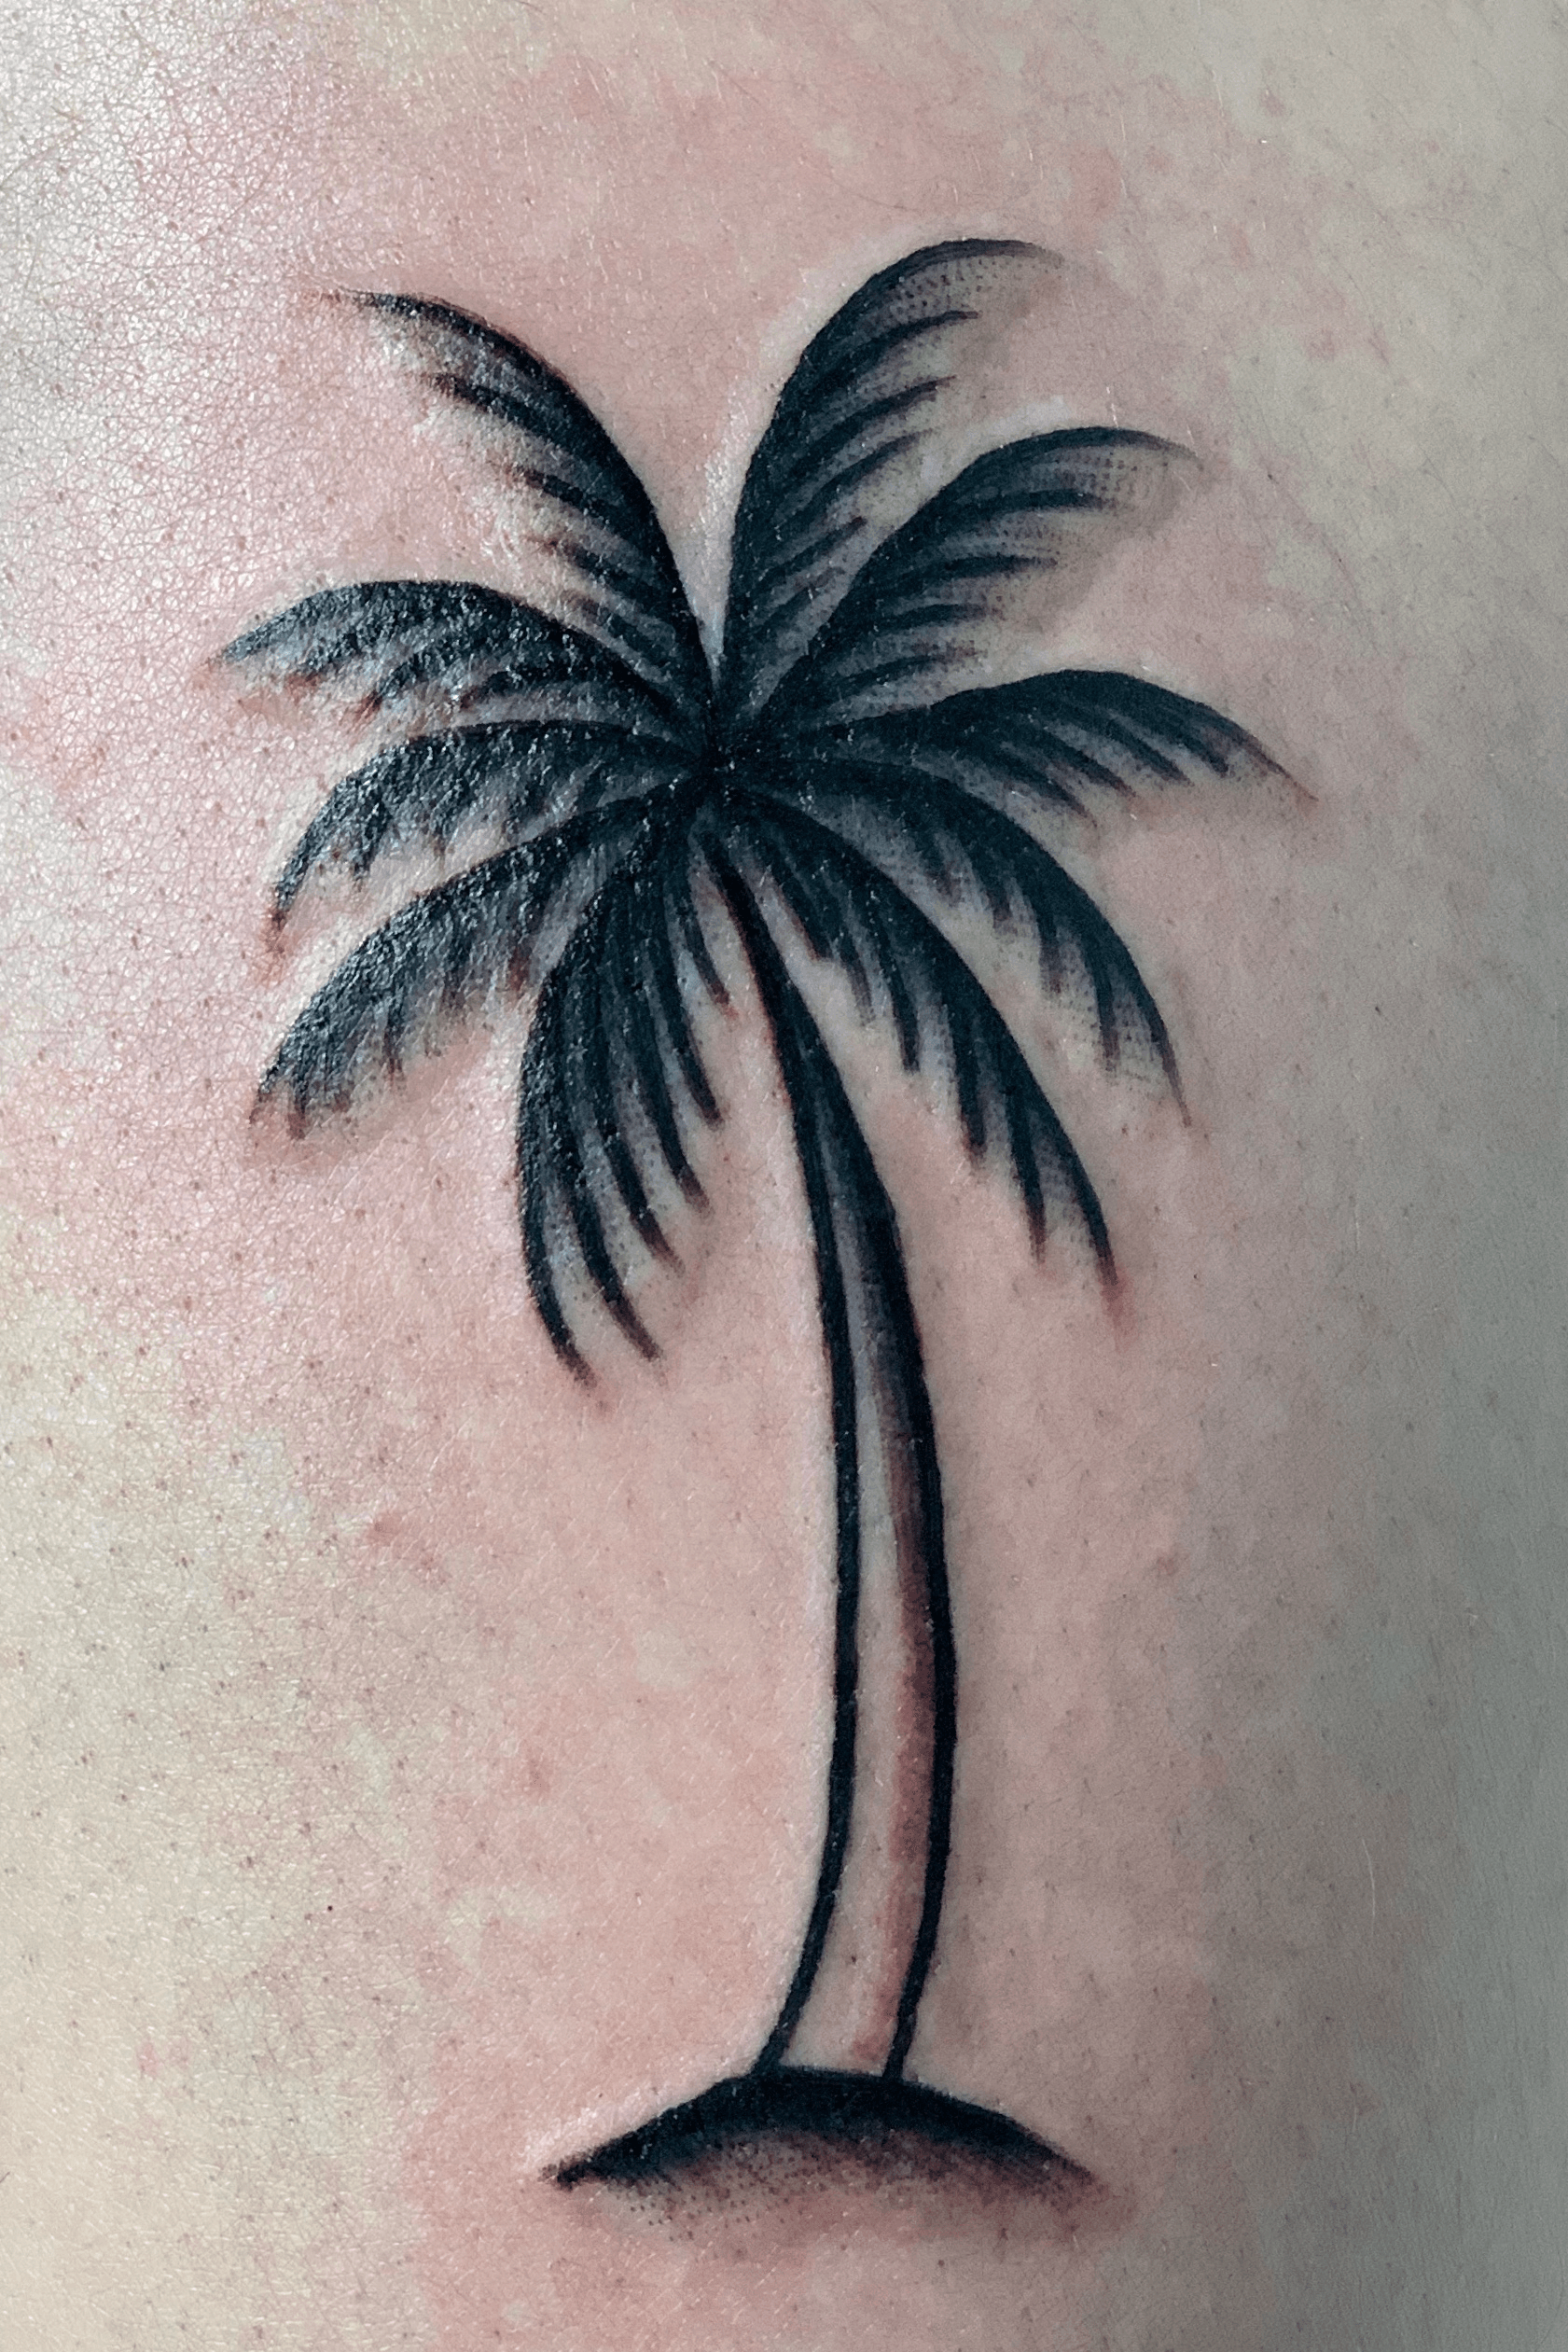 Tiny palm tree tattoo on a finger by Rebecca G 12ozstudios team12oz  tattoos tattooartist palmtree handtattoos  Palm tattoos Pretty tattoos  Finger tattoos